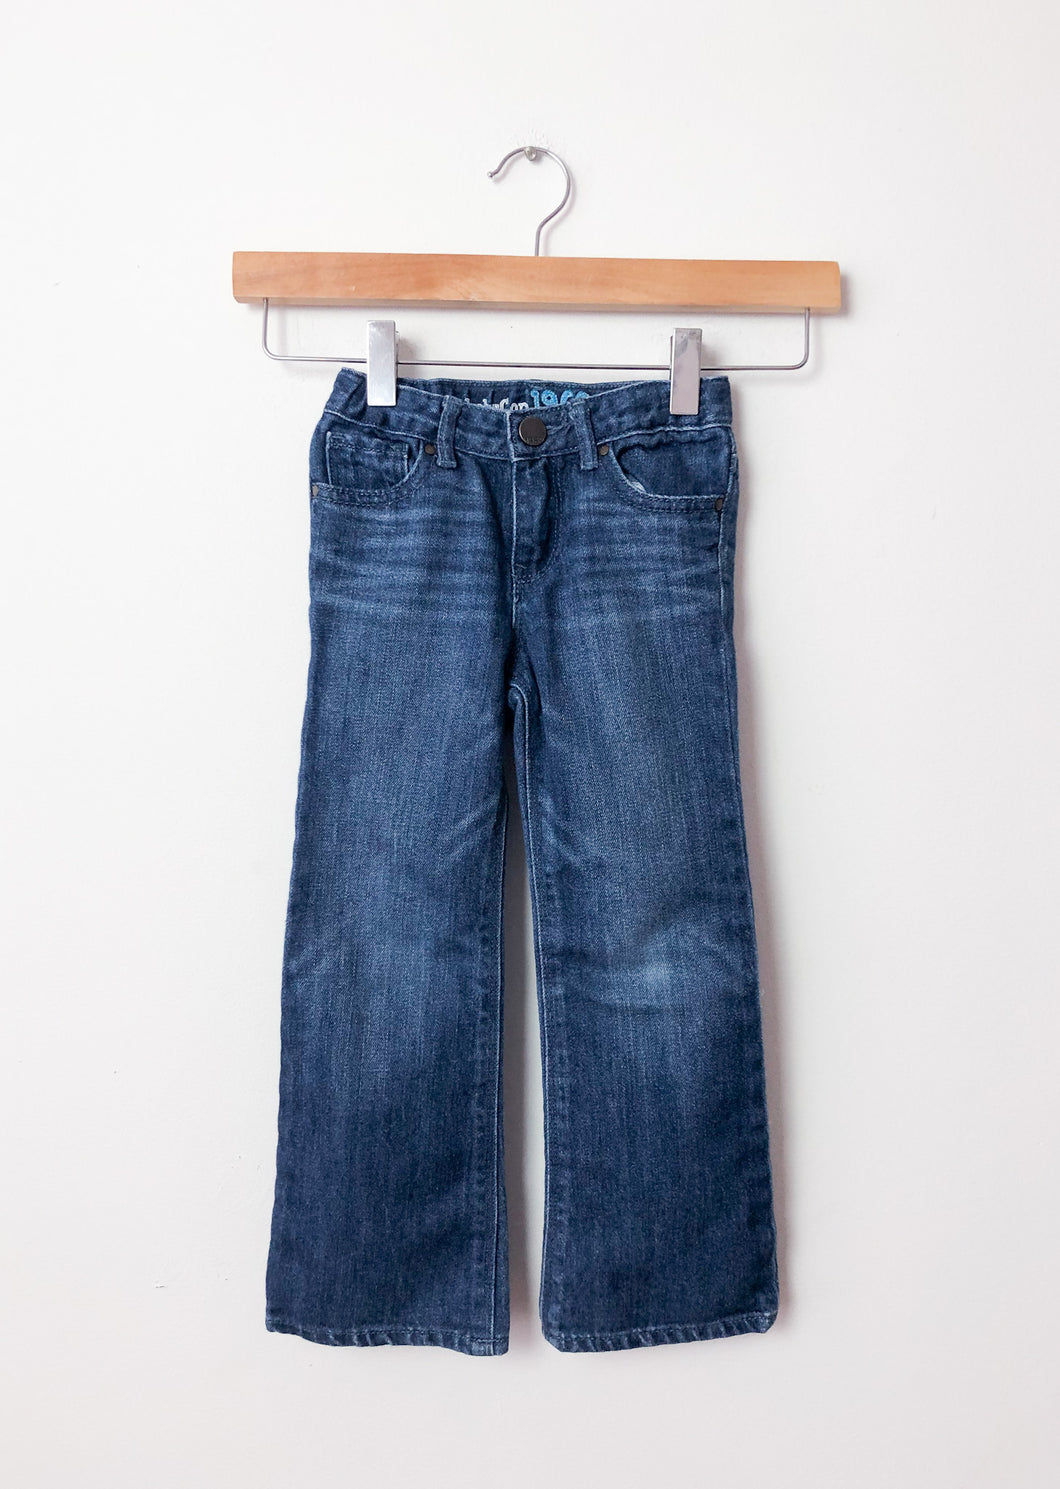 Blue Gap Jeans Size 4